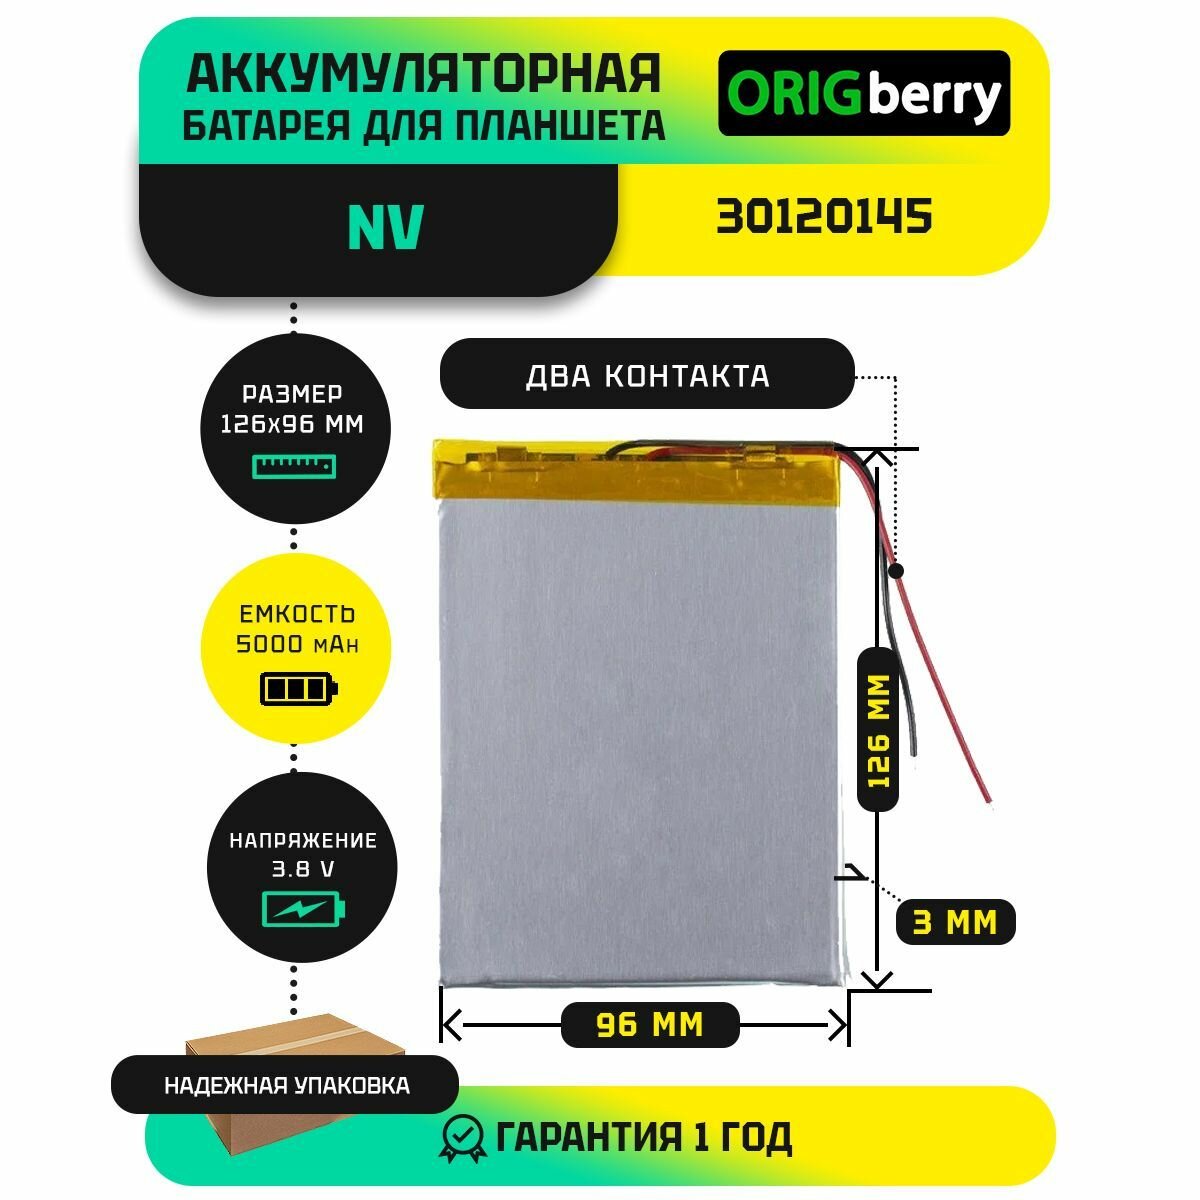 Аккумулятор для планшета NV 30120145